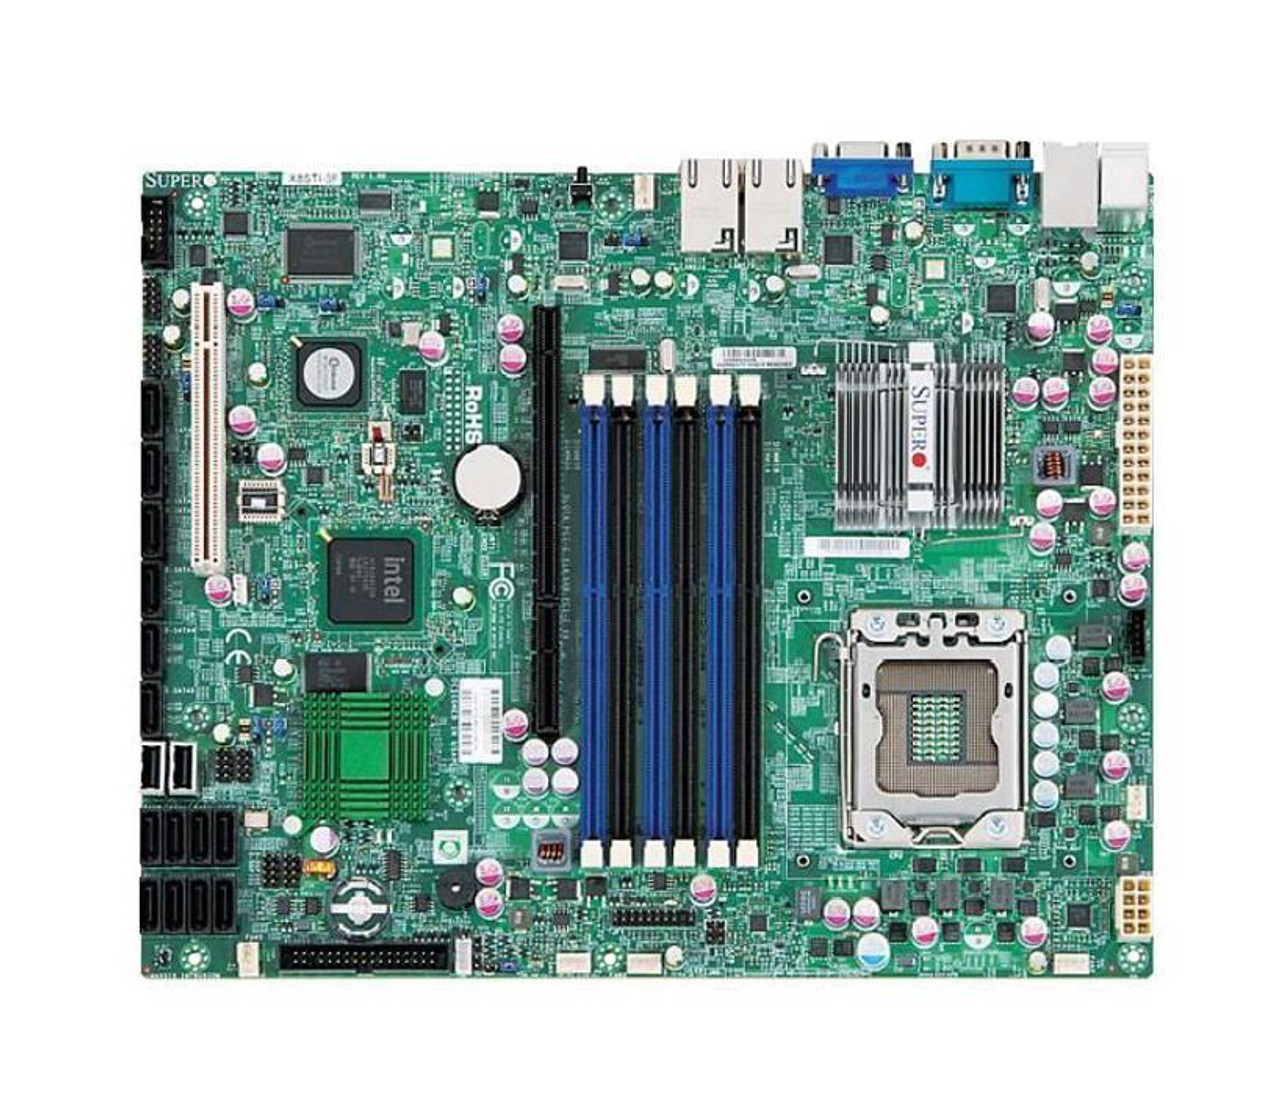 MBD-X8STI-F-O SuperMicro X8STI-F Socket LGA1366 Intel X58 Express Chipset ATX Server Motherboard (Refurbished)